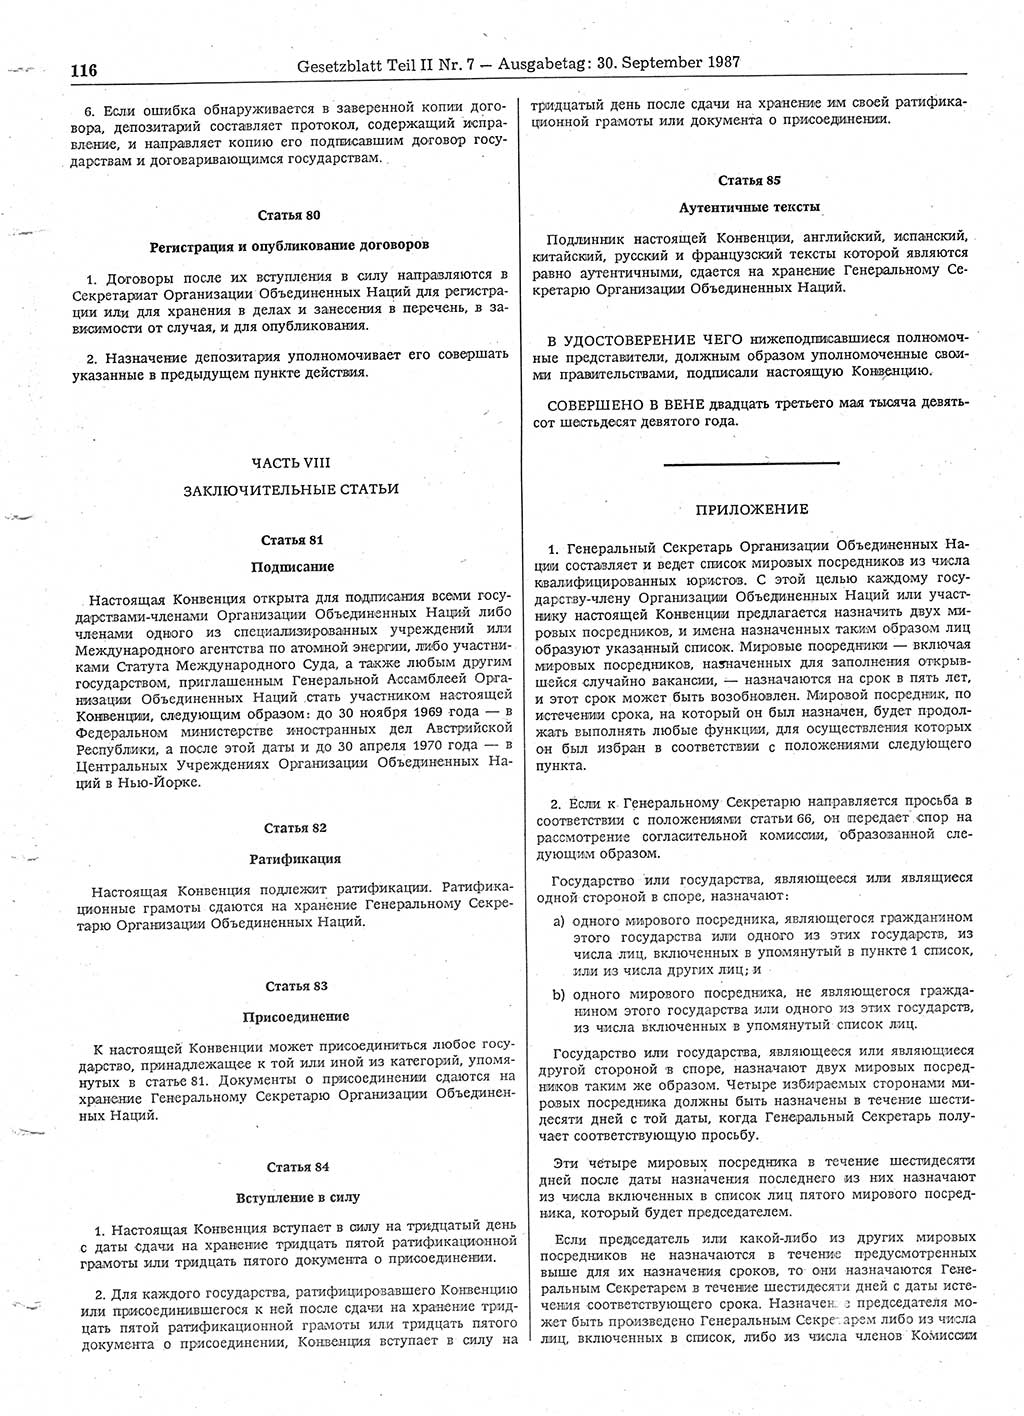 Gesetzblatt (GBl.) der Deutschen Demokratischen Republik (DDR) Teil ⅠⅠ 1987, Seite 116 (GBl. DDR ⅠⅠ 1987, S. 116)